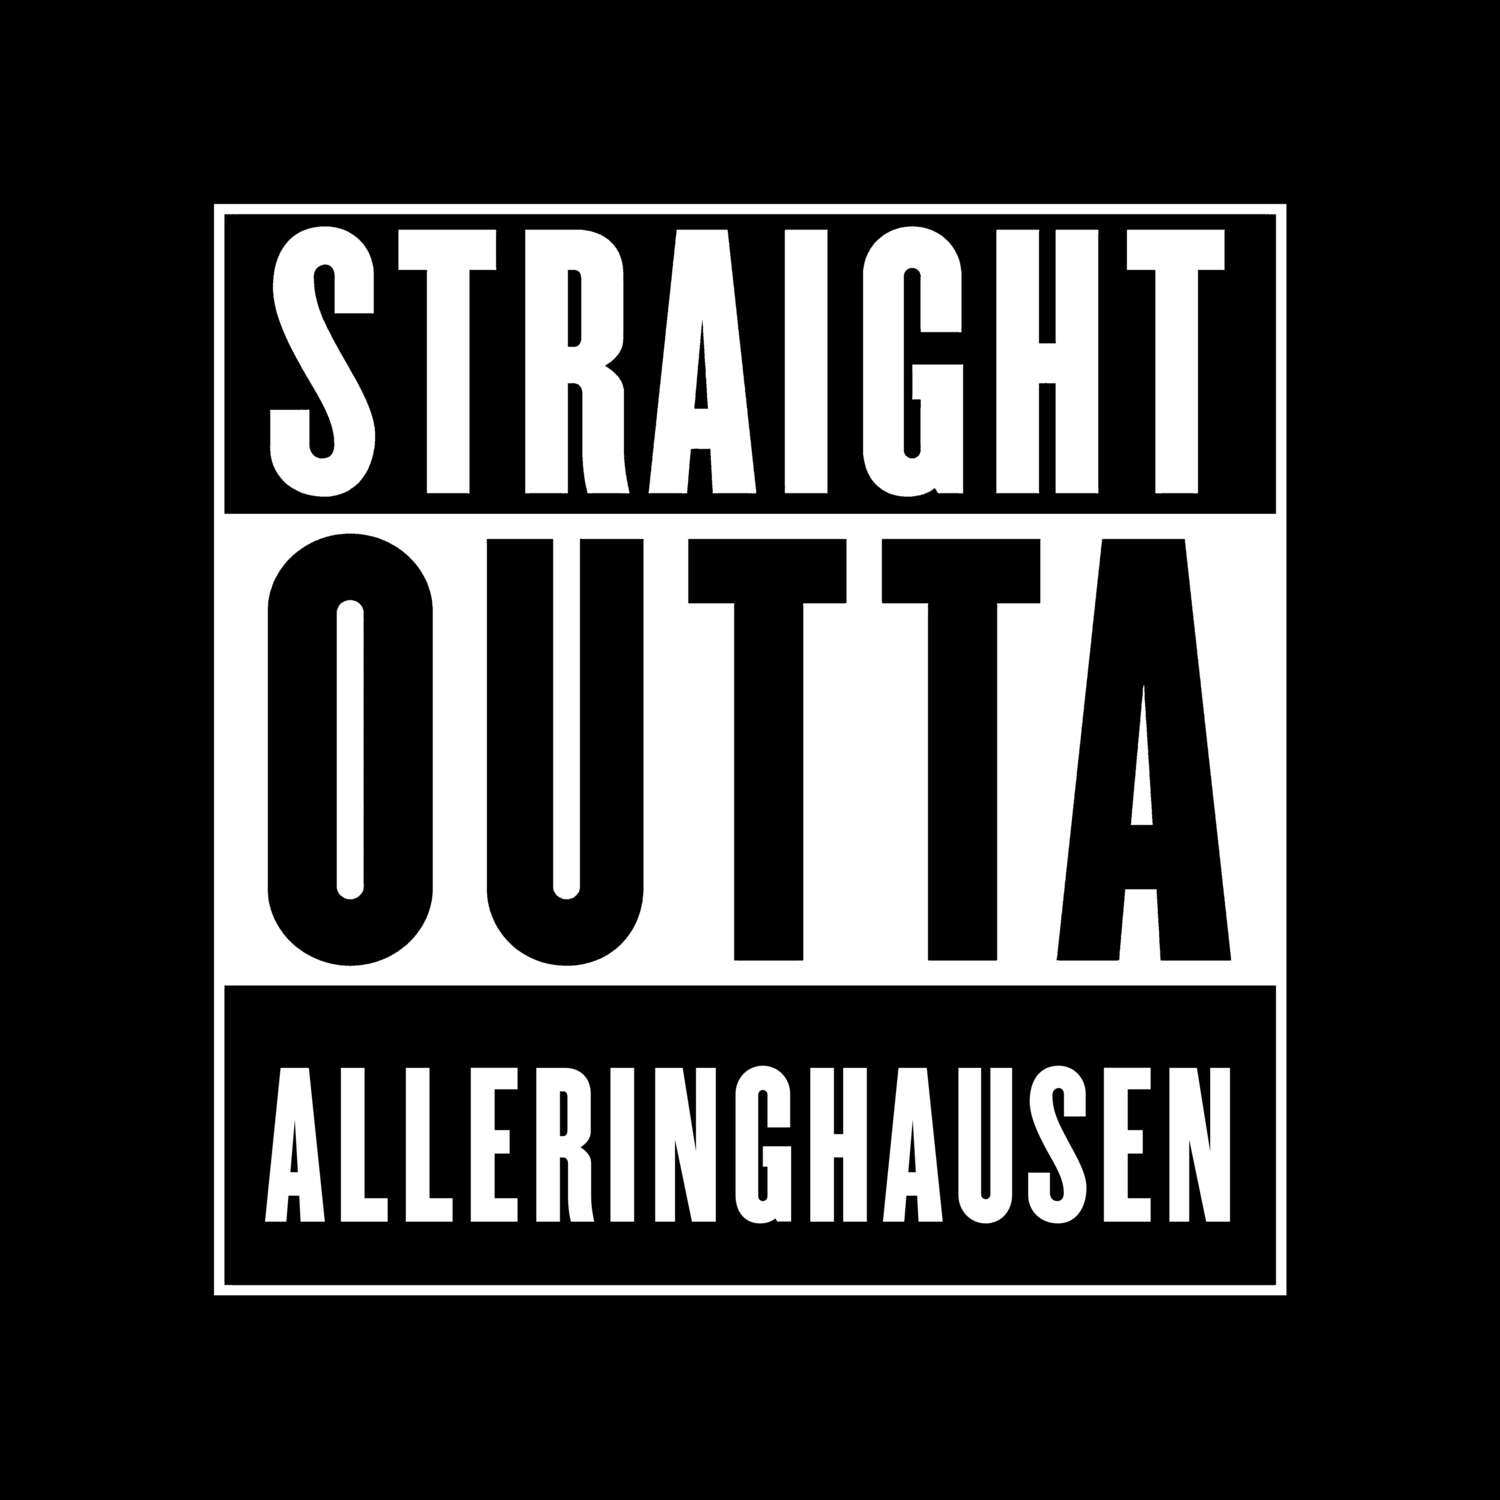 Alleringhausen T-Shirt »Straight Outta«